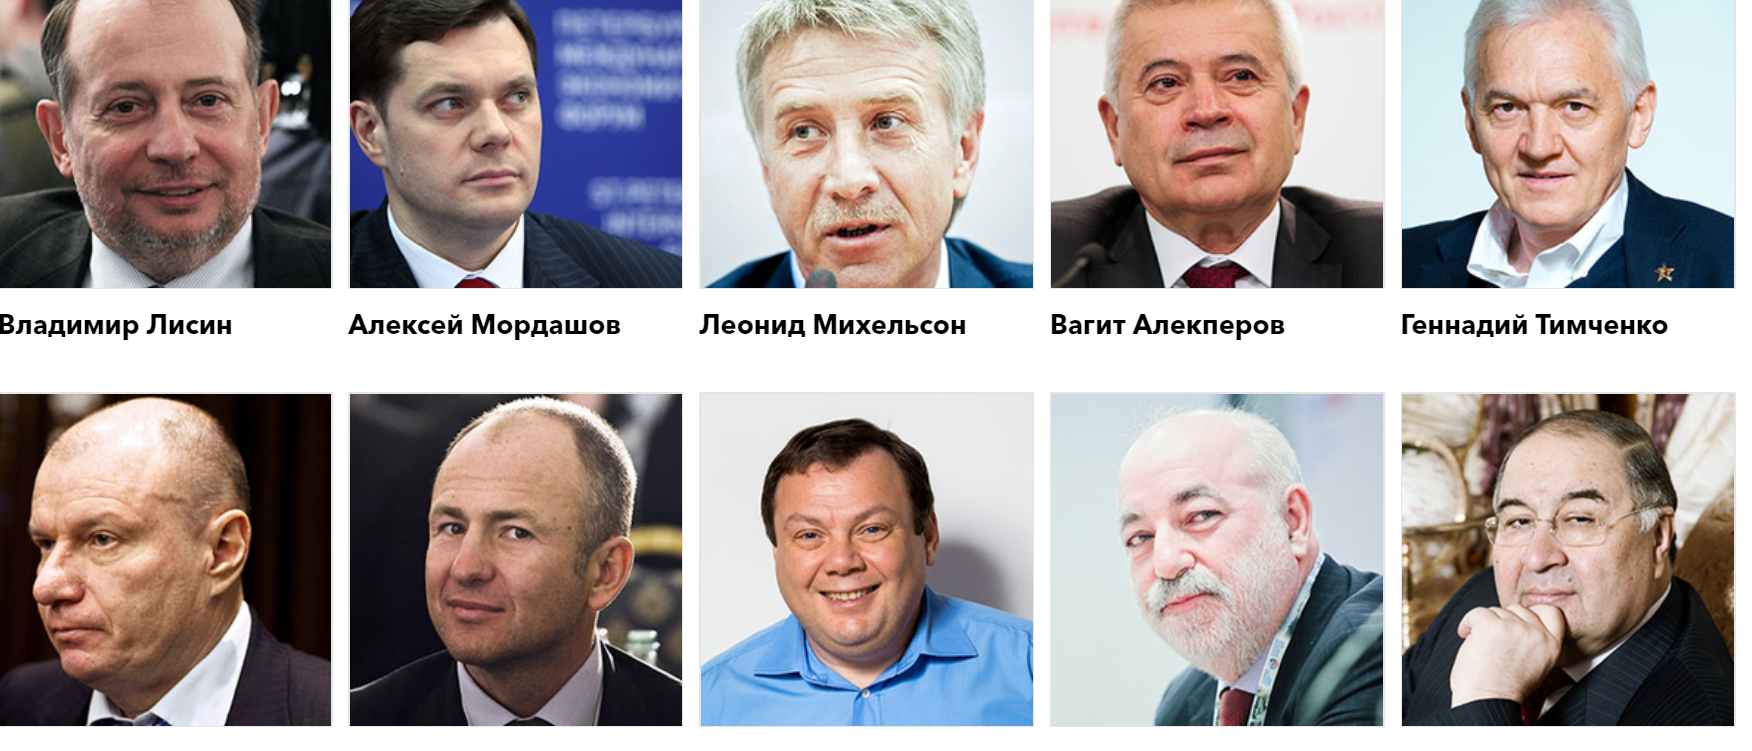 Forbes: российские миллиардеры продолжают богатеть, несмотря на санкции